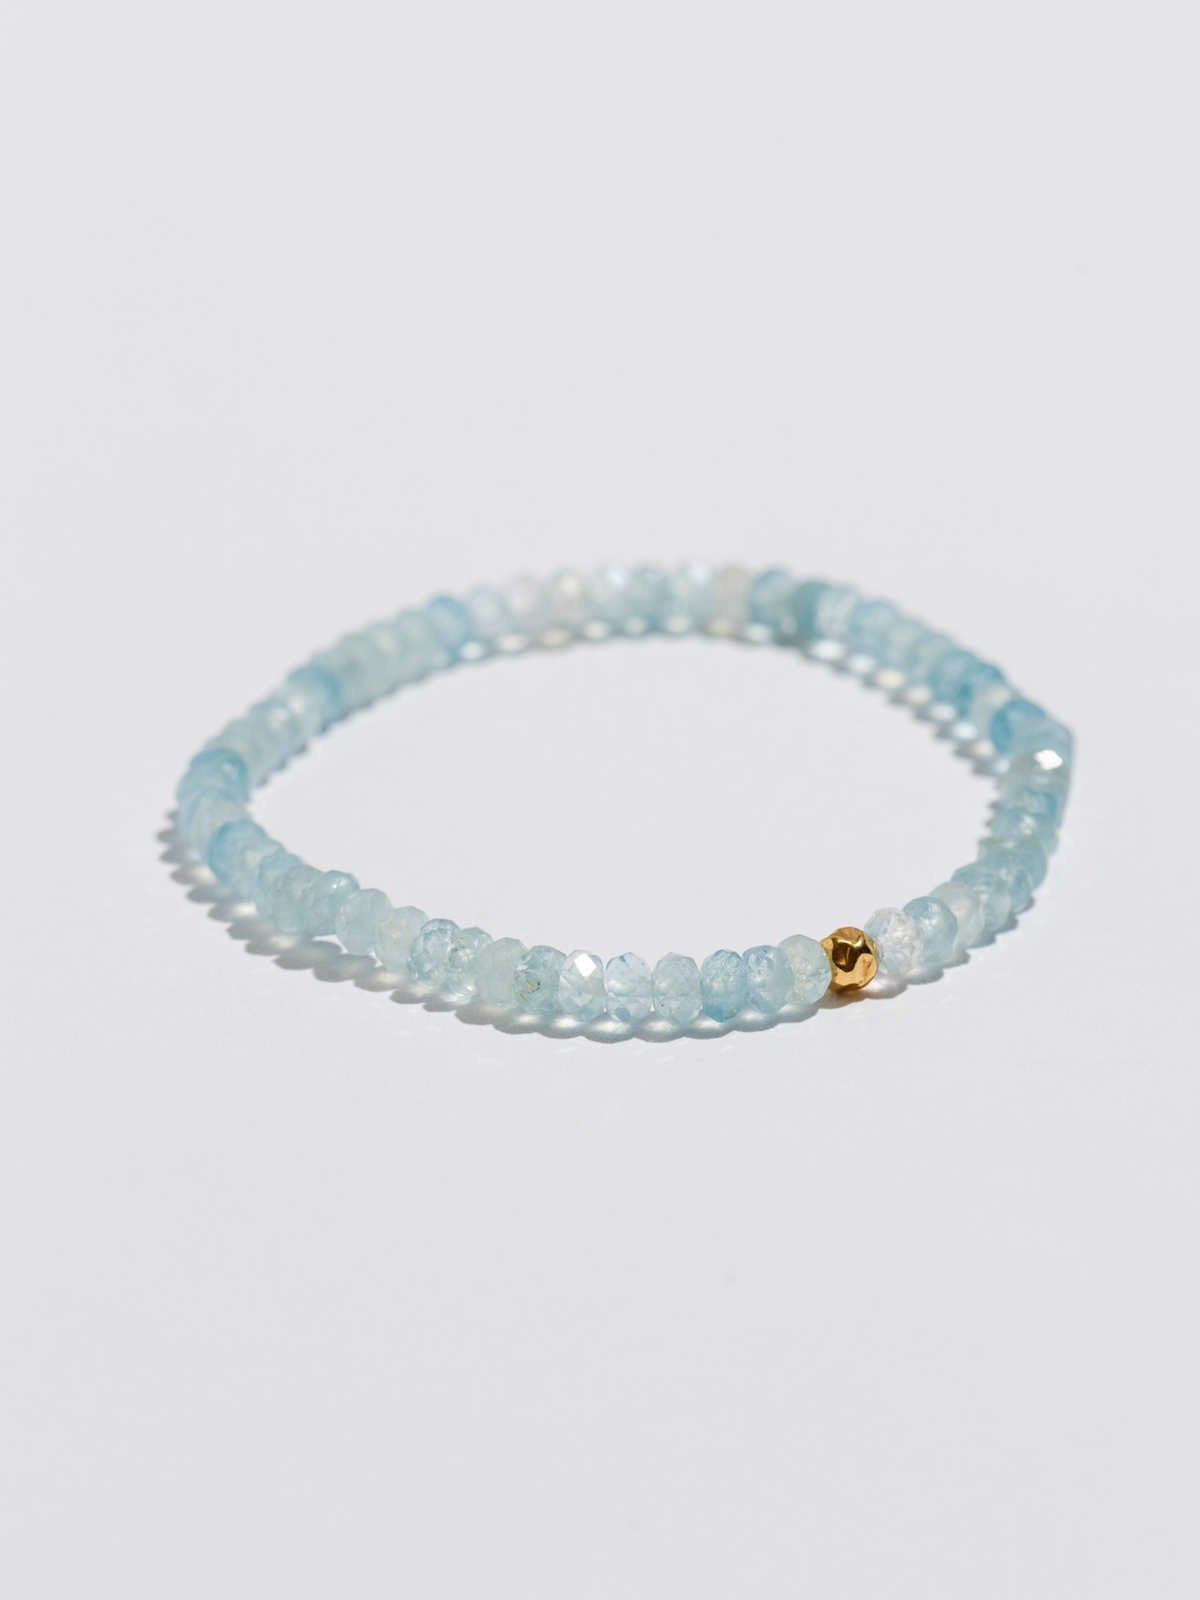 Rock Solid Aquamarine Bracelet